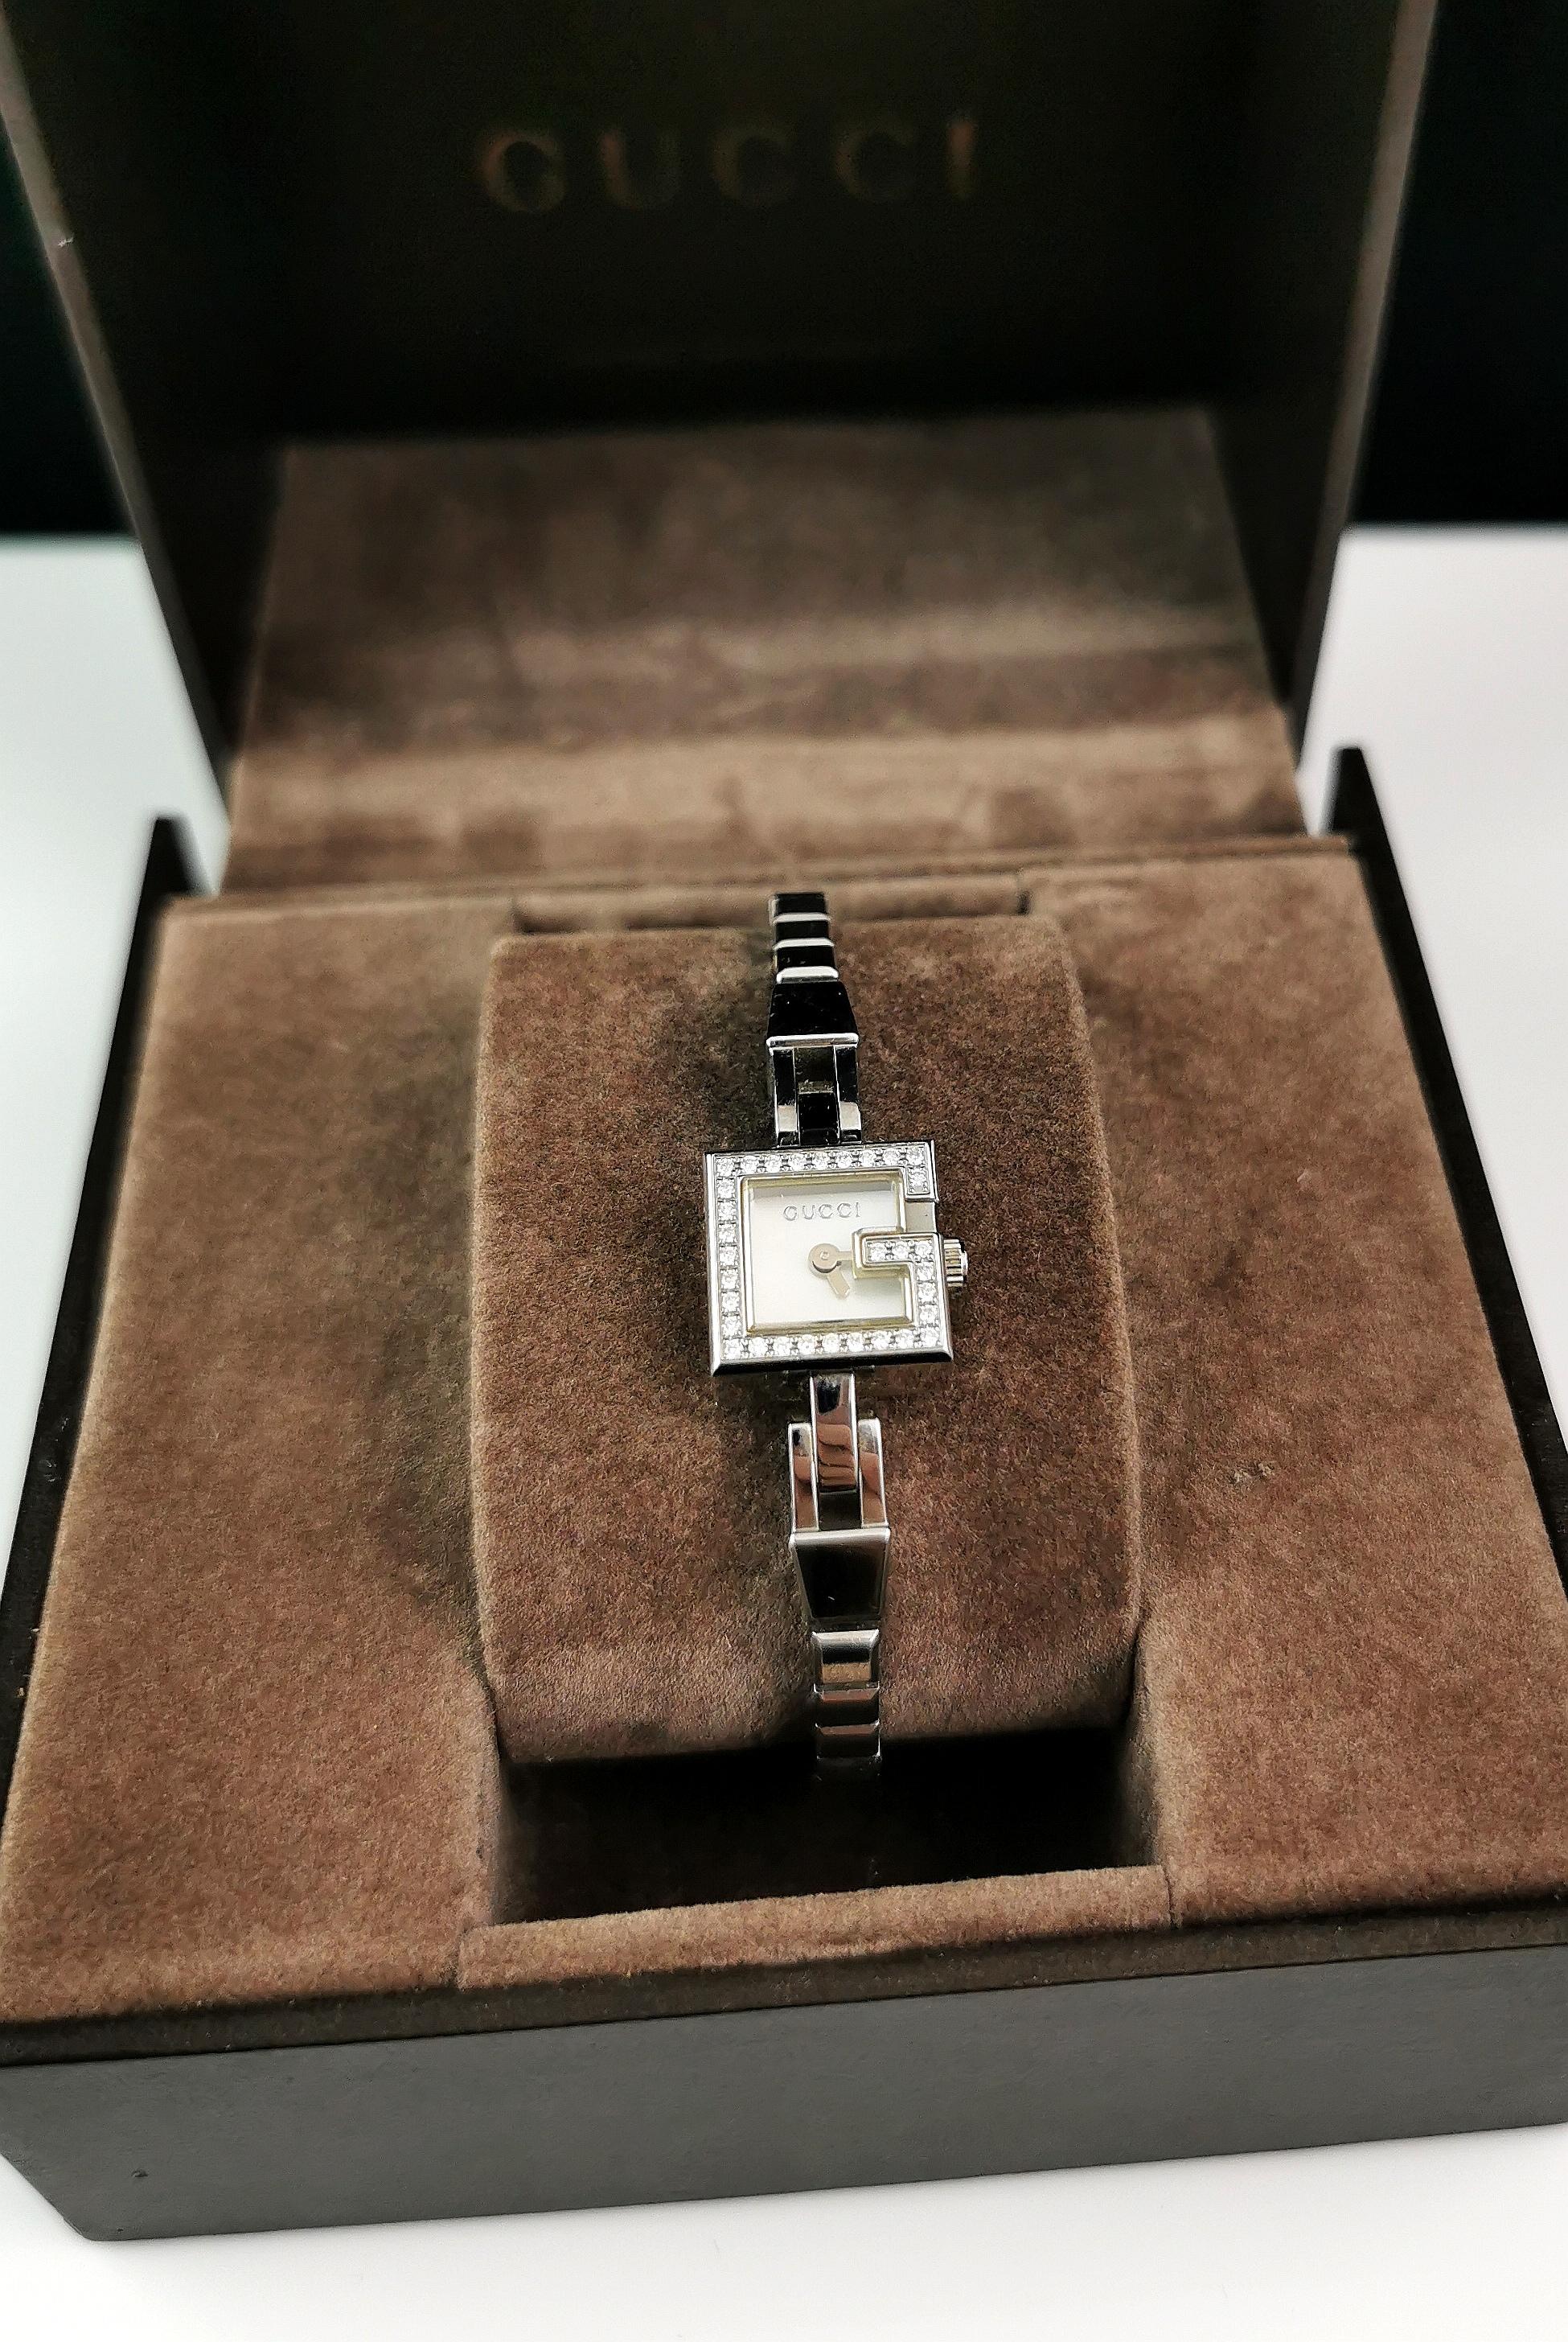 Eine elegante Gucci Damenuhr Mini G aus Edelstahl mit Diamantbesatz. 

Dies ist ein Armband Armband Uhr mit einem schönen schlanken Edelstahlarmband mit einem Ziegel-Typ Link. 

Das Gehäuse ist aus Edelstahl mit einem hell schillernden weißen